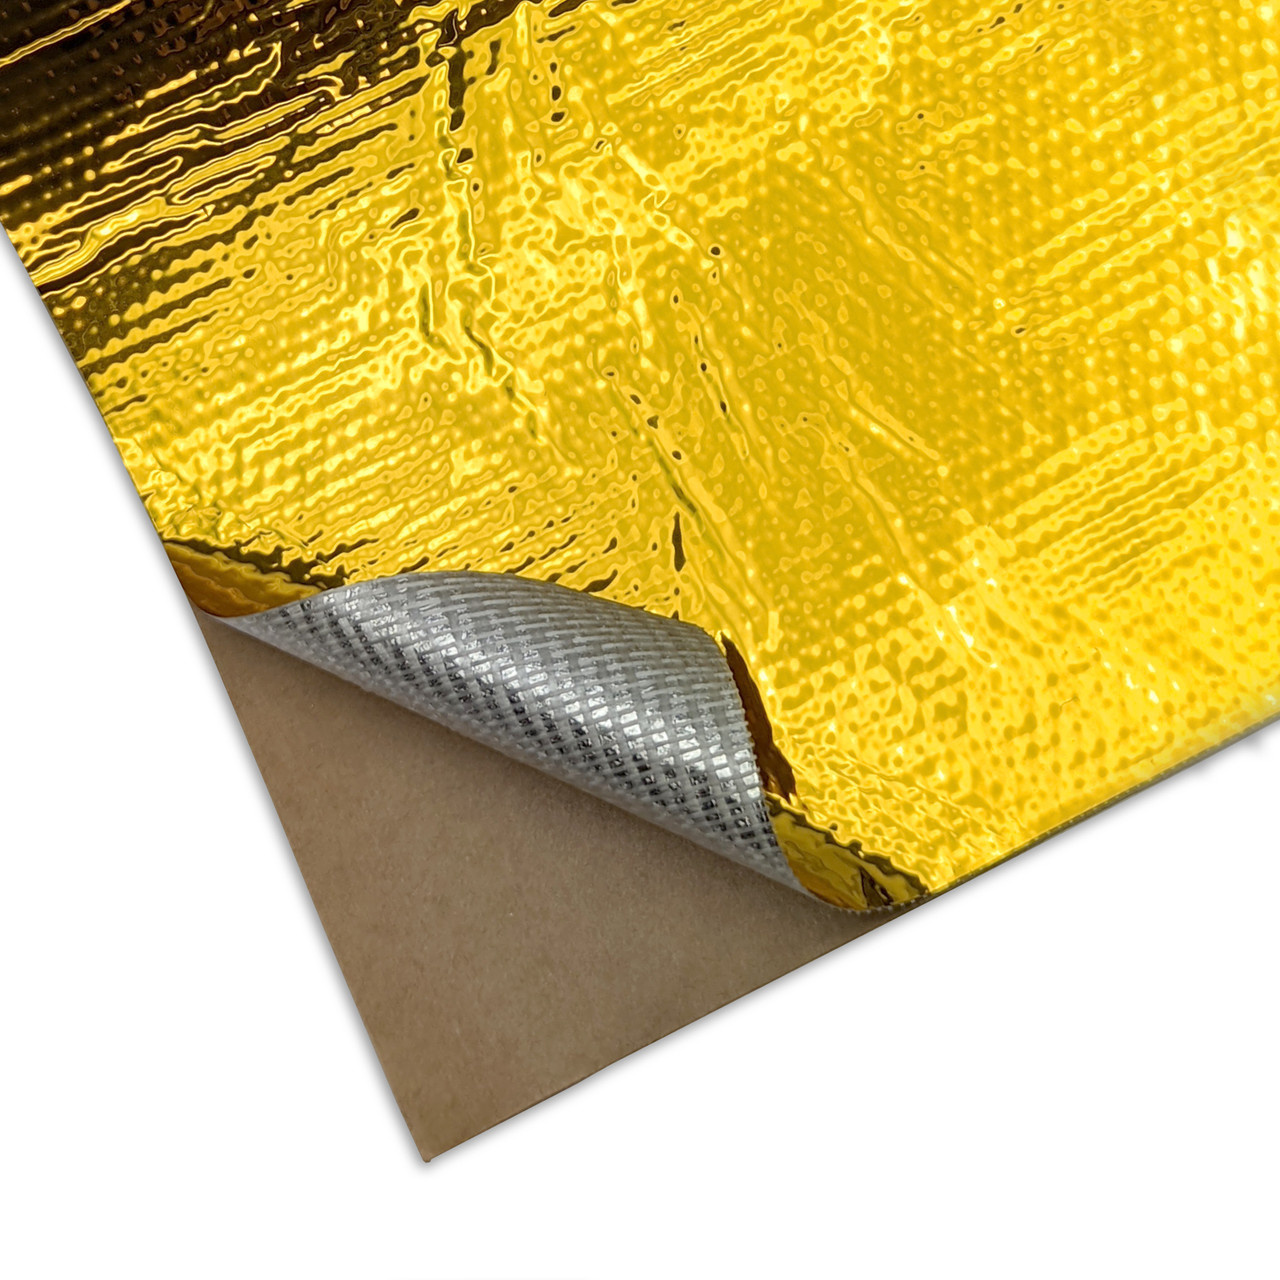 Kaufe Nachahmung von Goldkristallen, UV-Zubehör, Goldfolie